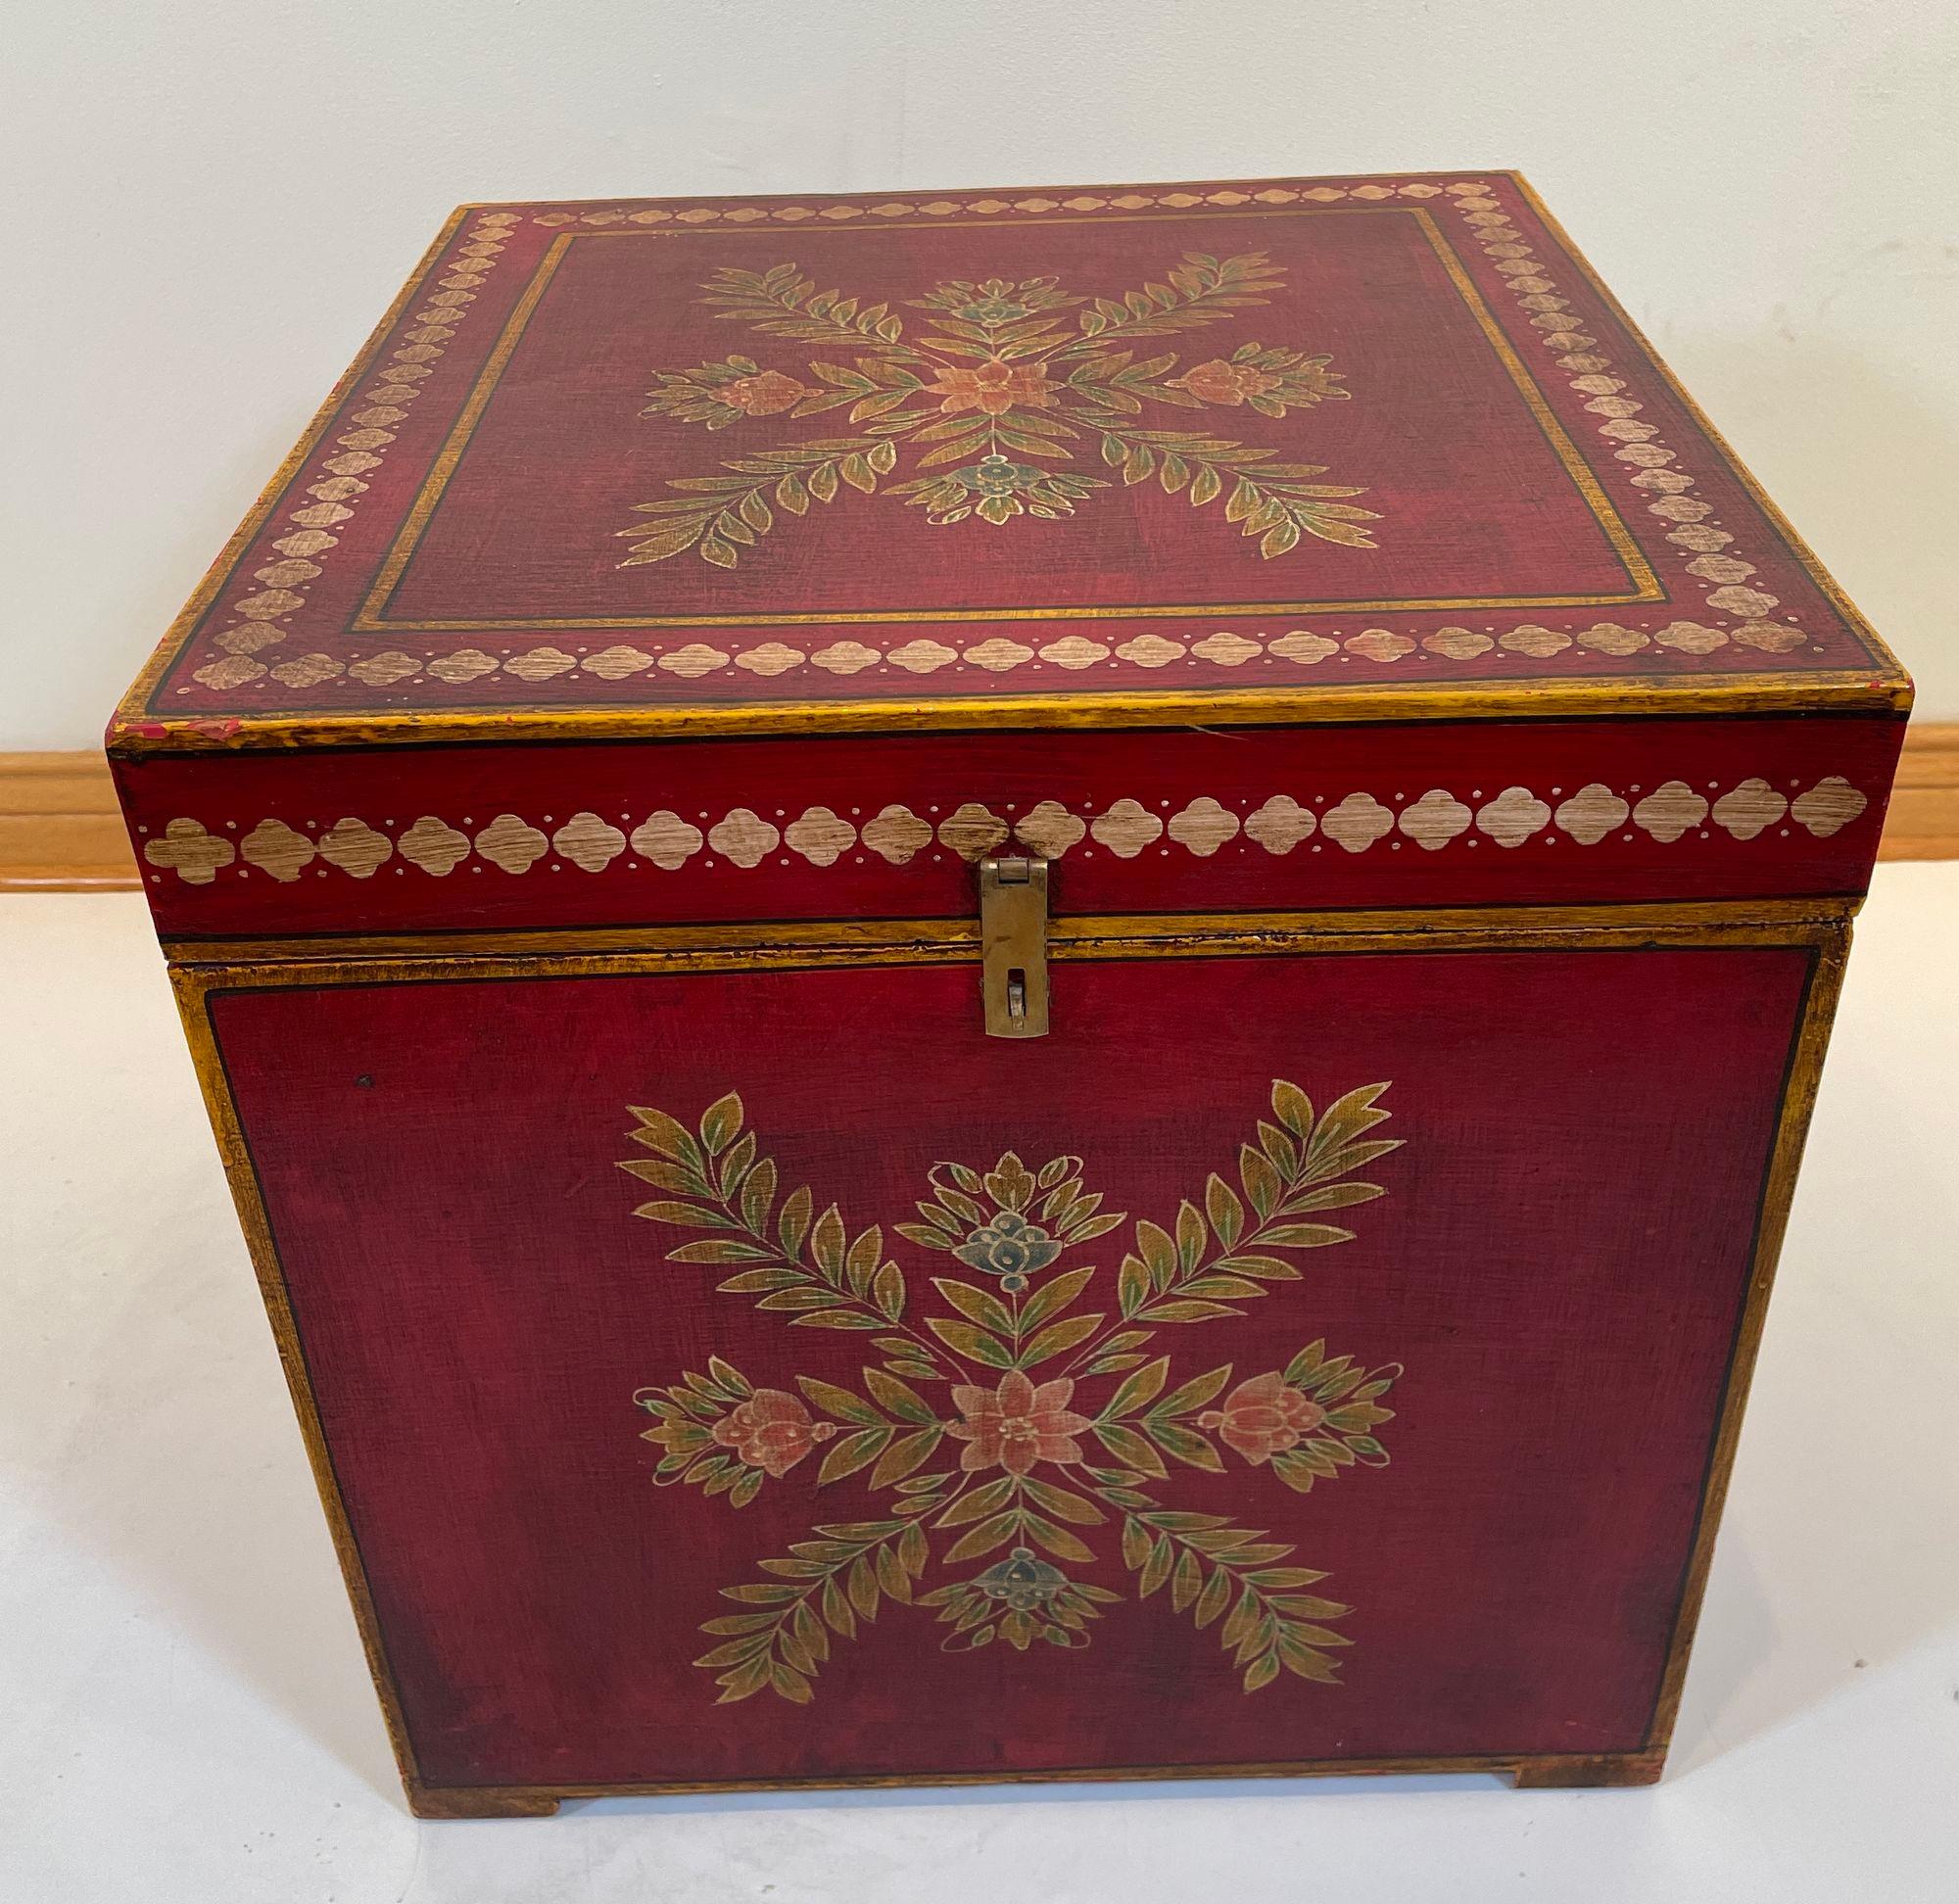 Vintage Folk Art Lack handbemalt dekorative Lagerung Holzkoffer.
Dieser rot lackierte Beistelltisch ist eine elegante, dekorative Ergänzung für jeden Raum, besonders in einem Schlafzimmer als Nachttisch oder in jedem anderen Raum. Verwenden Sie ihn